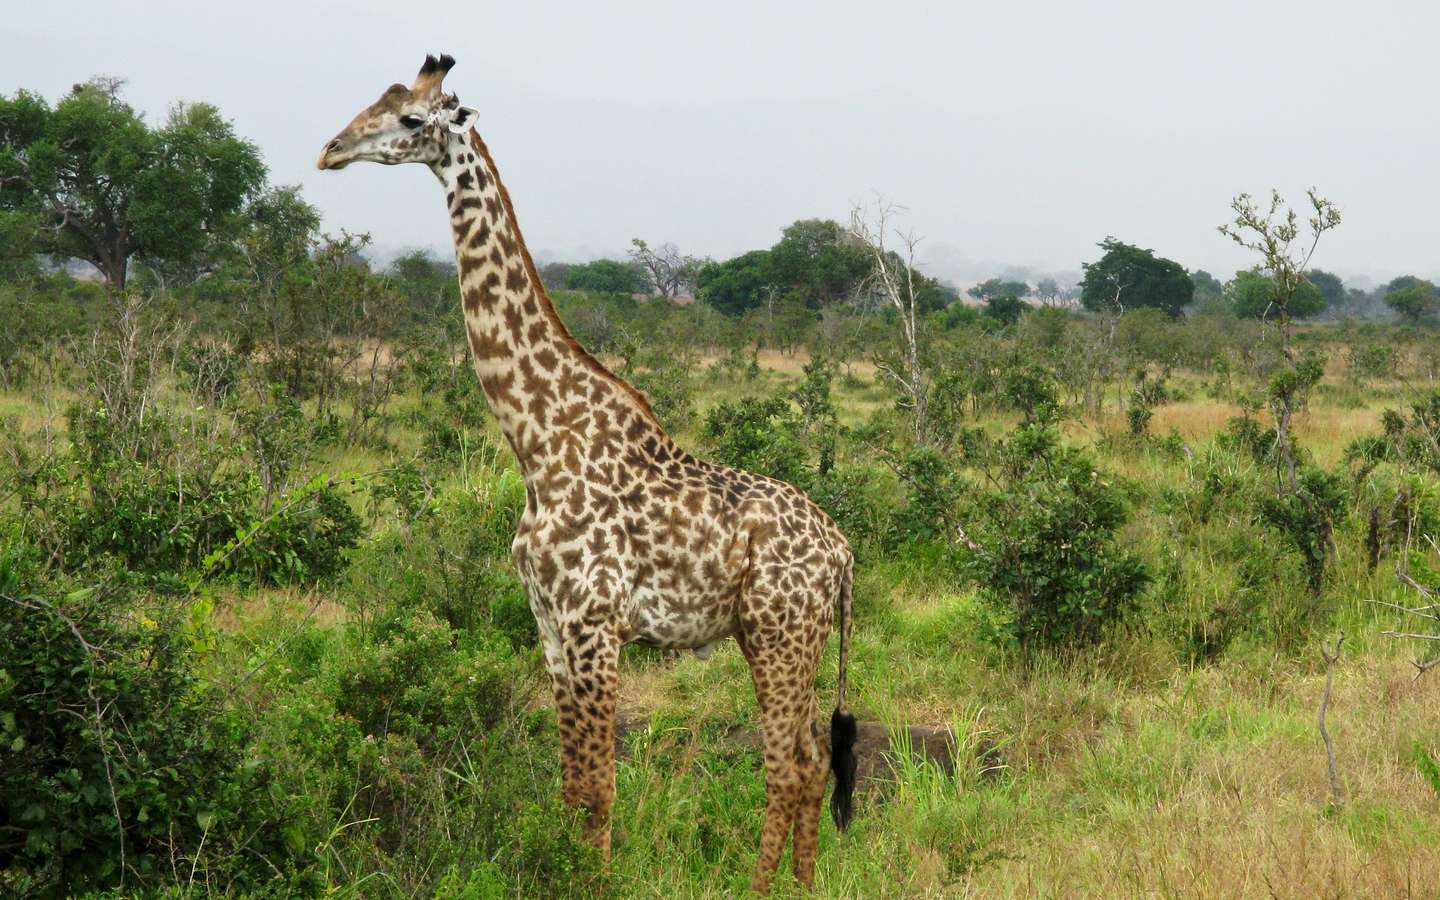 La découverte de girafes naines étonne les scientifiques